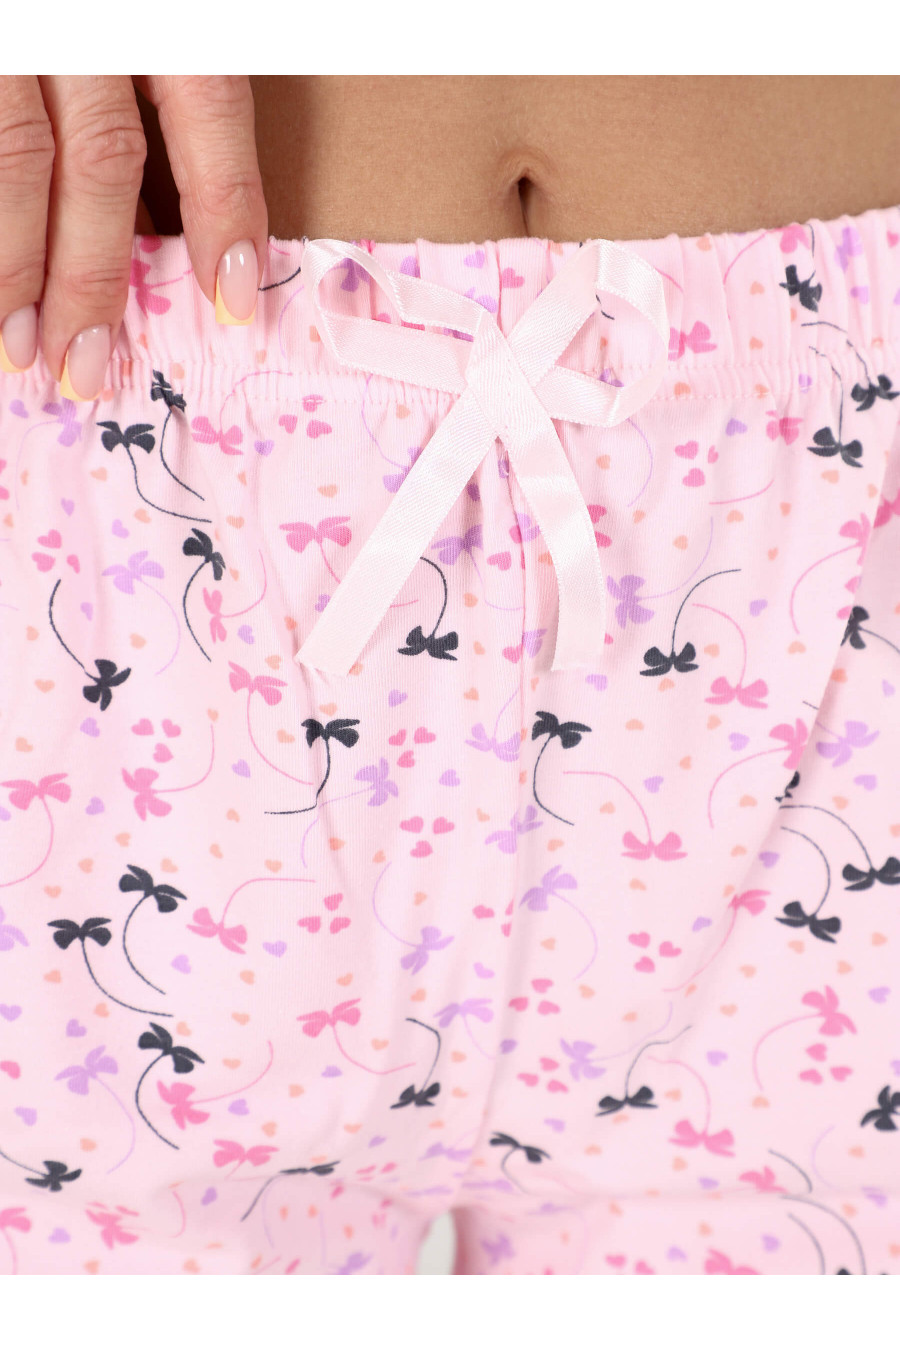 4860 Комплект женский майка+шорты, розовый бантики